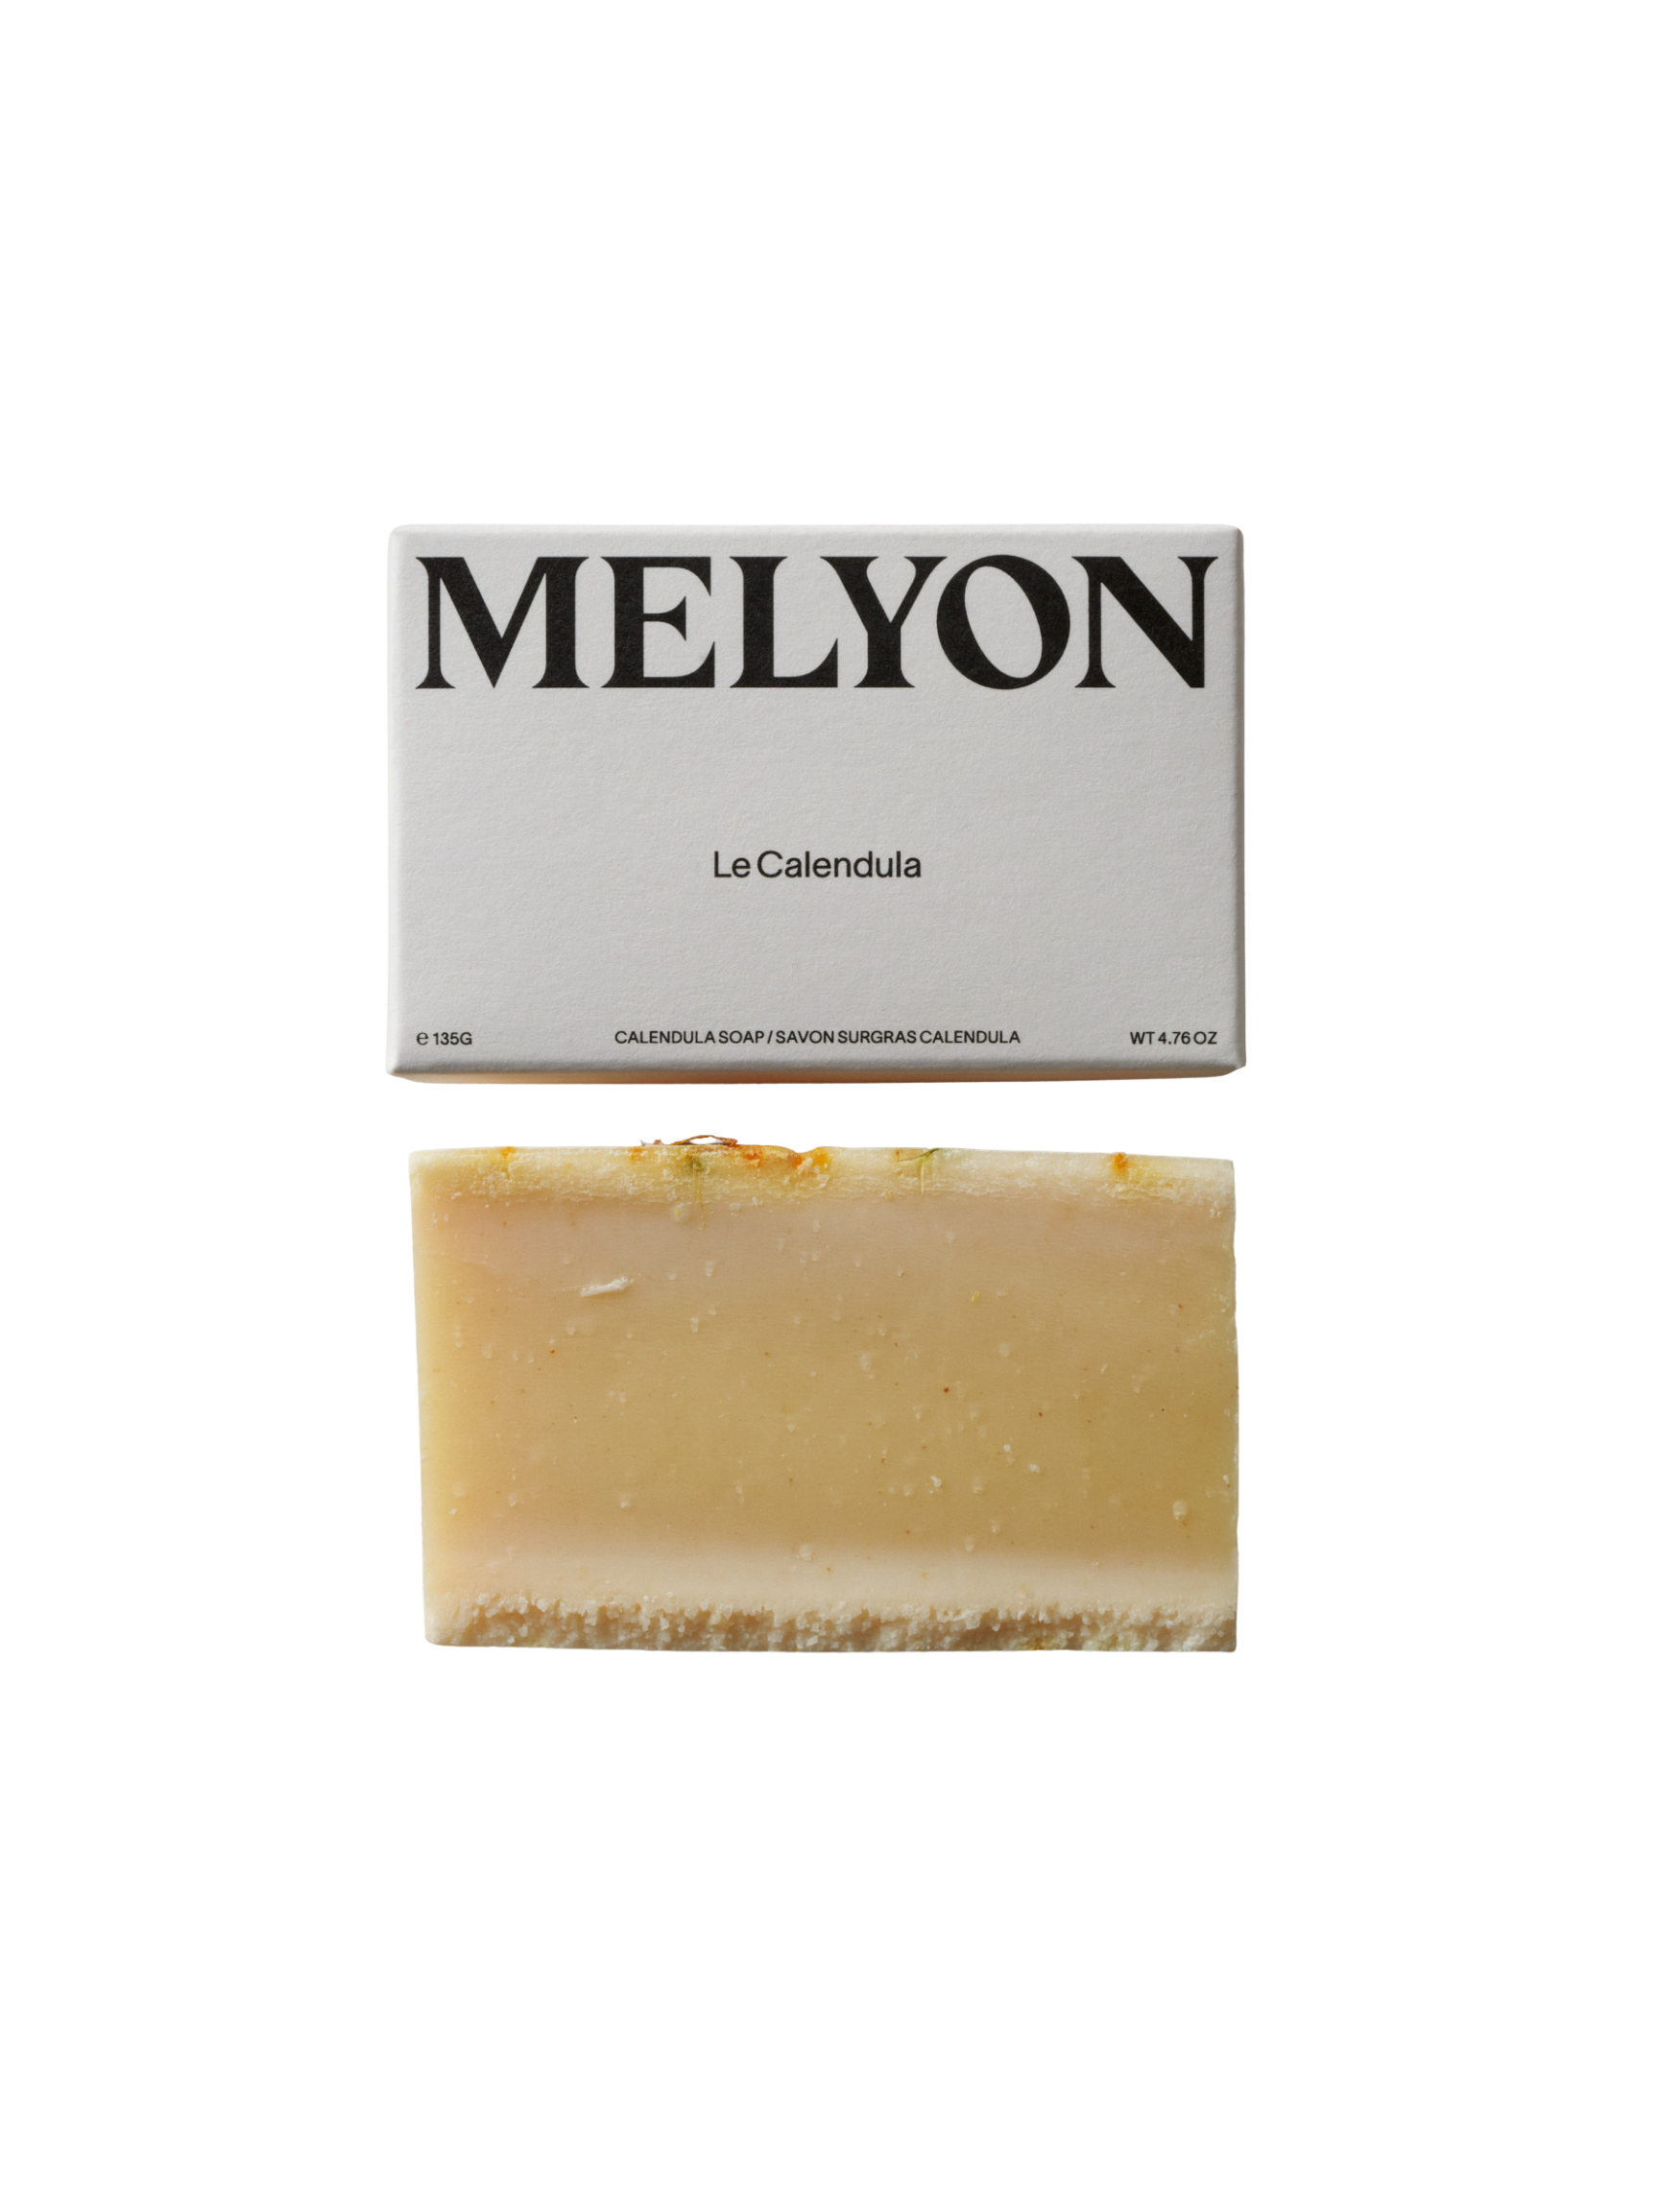 MELYON La Calendula Soap 135g, La Calendula Soap, MELYON, Exfoliating Bar Soap, PourHommies